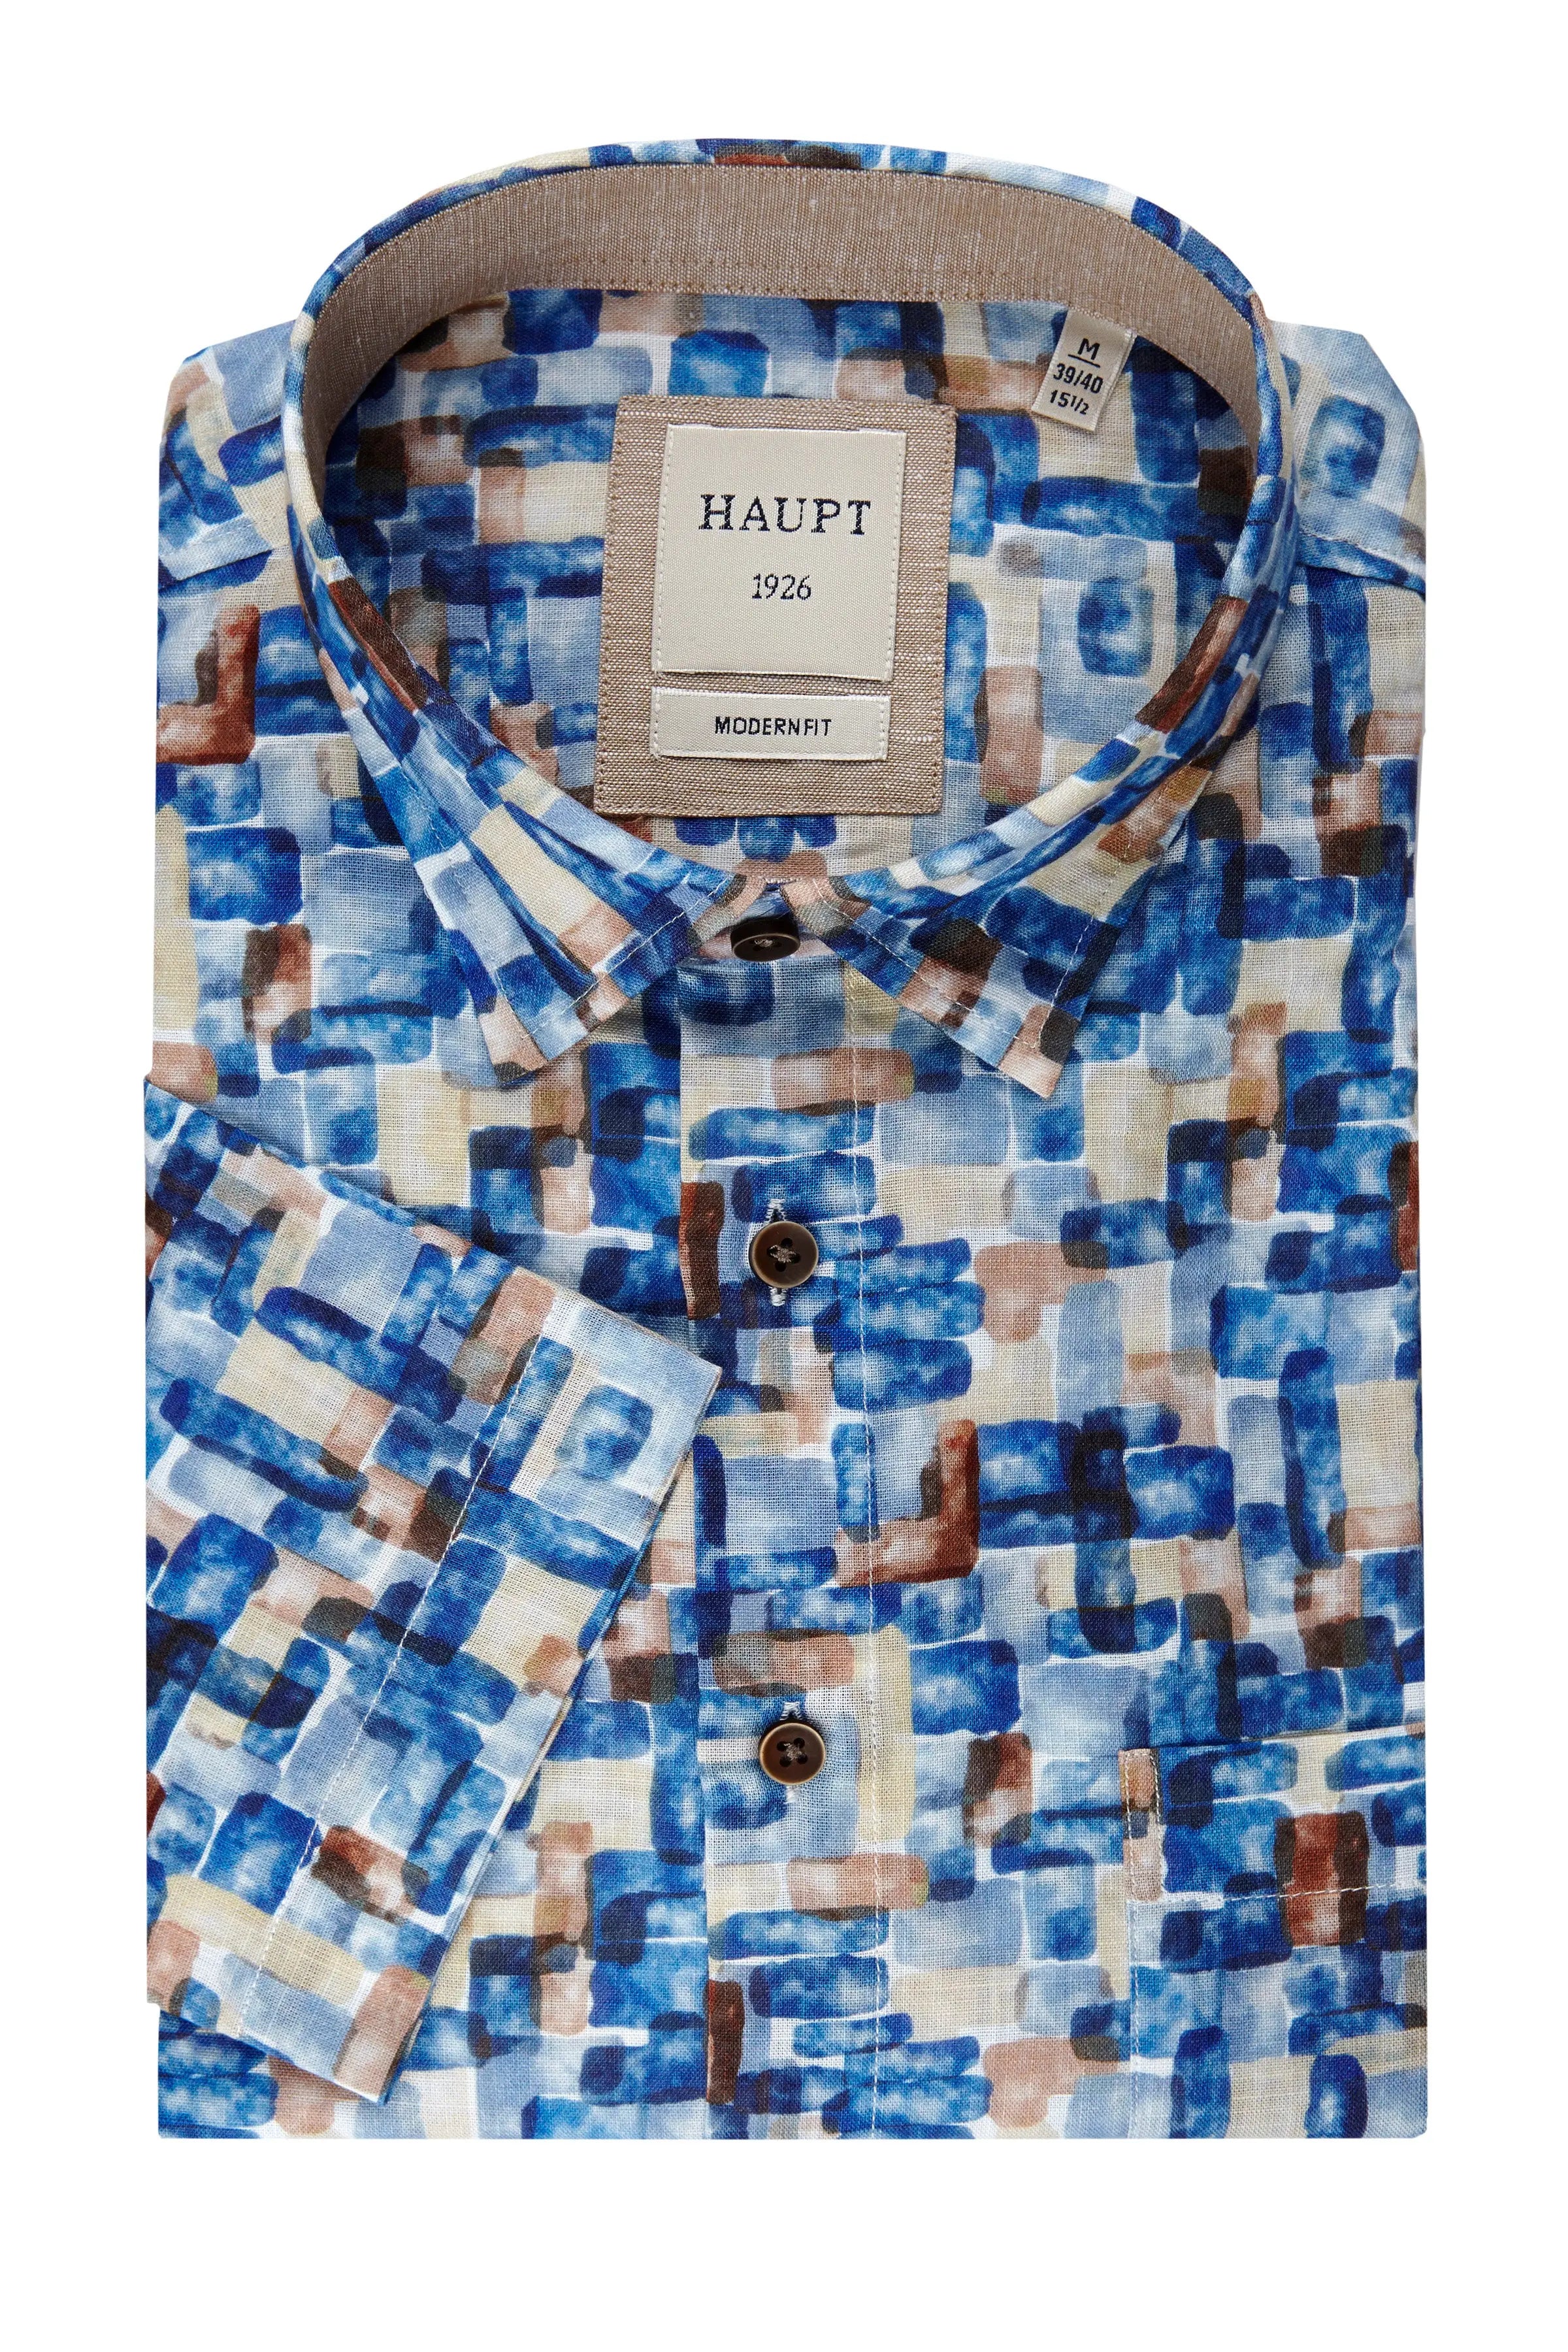 Baumwoll-Herrenhemd navy print Haupt